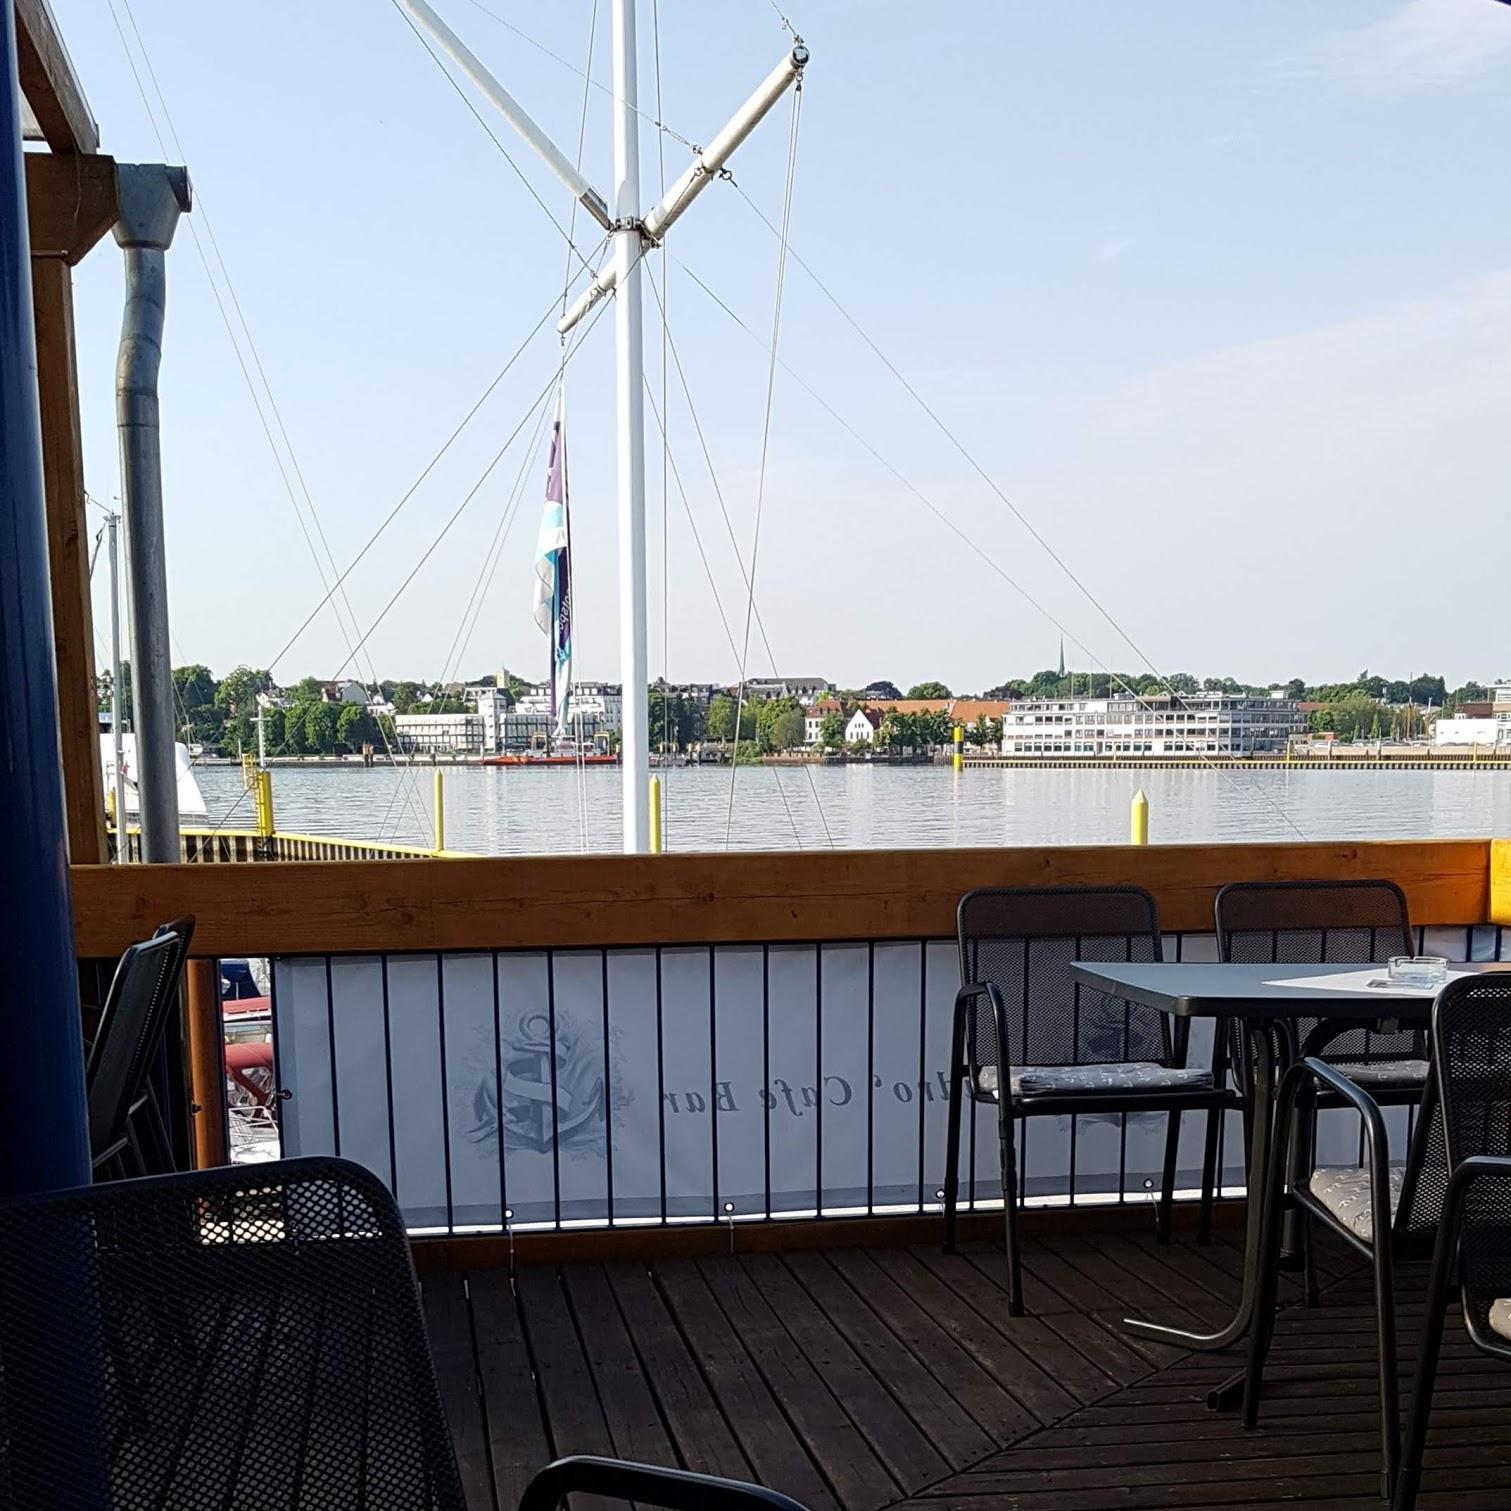 Restaurant "Weser Yacht Club" in Lemwerder